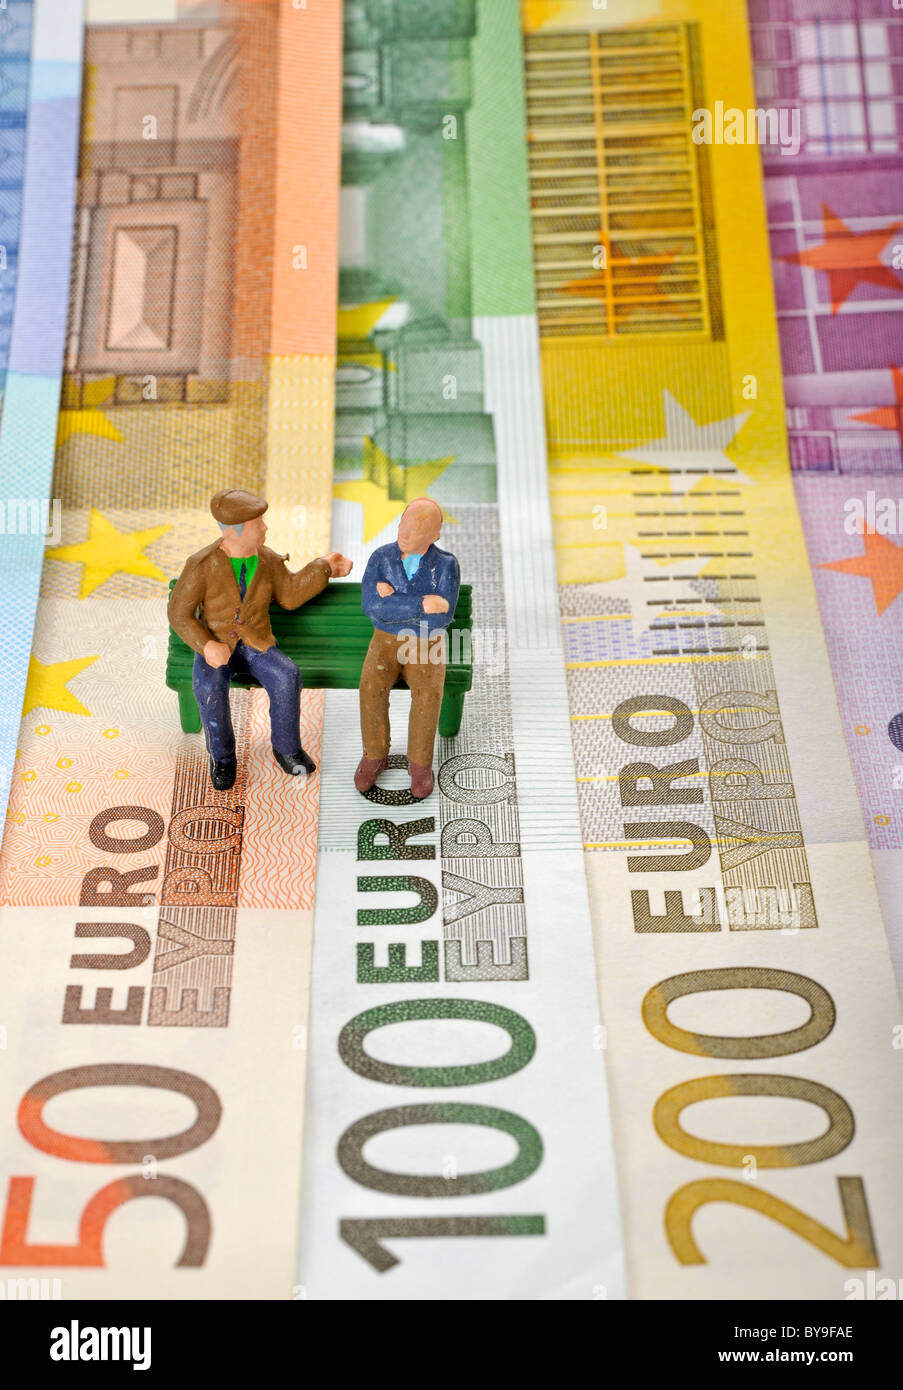 Verschiedenen Euro-Banknoten mit Miniaturfiguren von Senioren auf einer Parkbank, symbolisches Bild für Rente oder Pensionierung Stockfoto